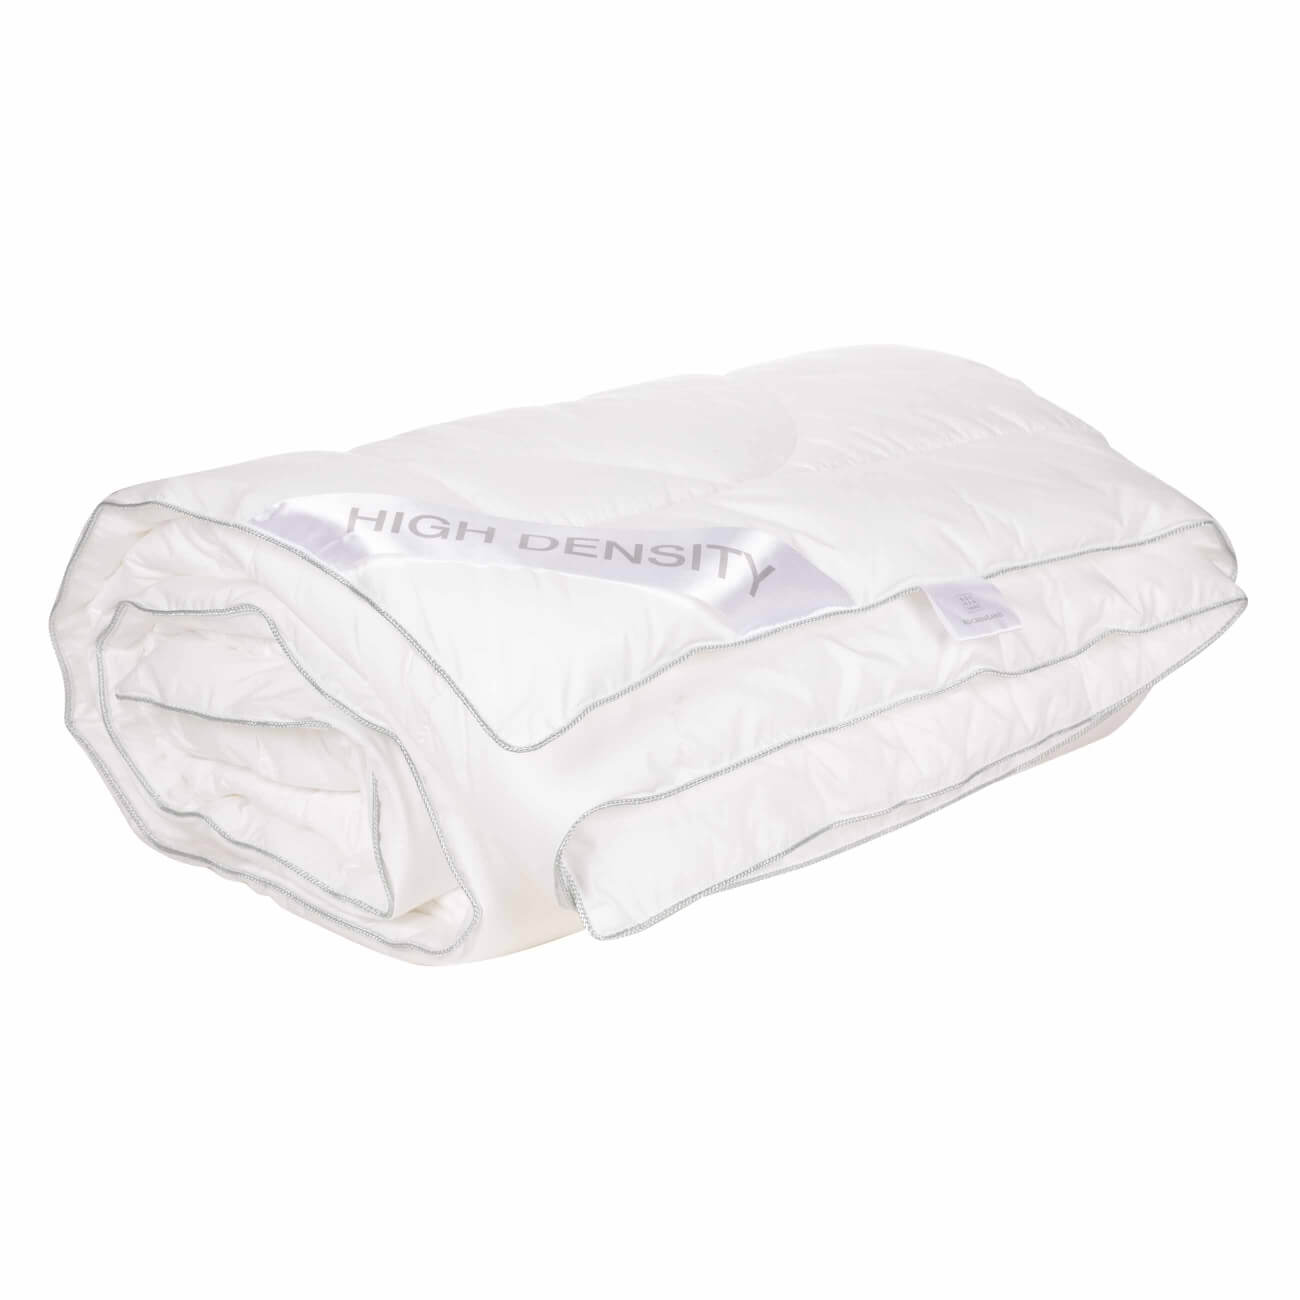 Одеяло, 200х220 см, полиэстер/микрофибра, High density одеяло 200х220 см микрофибра simply soft